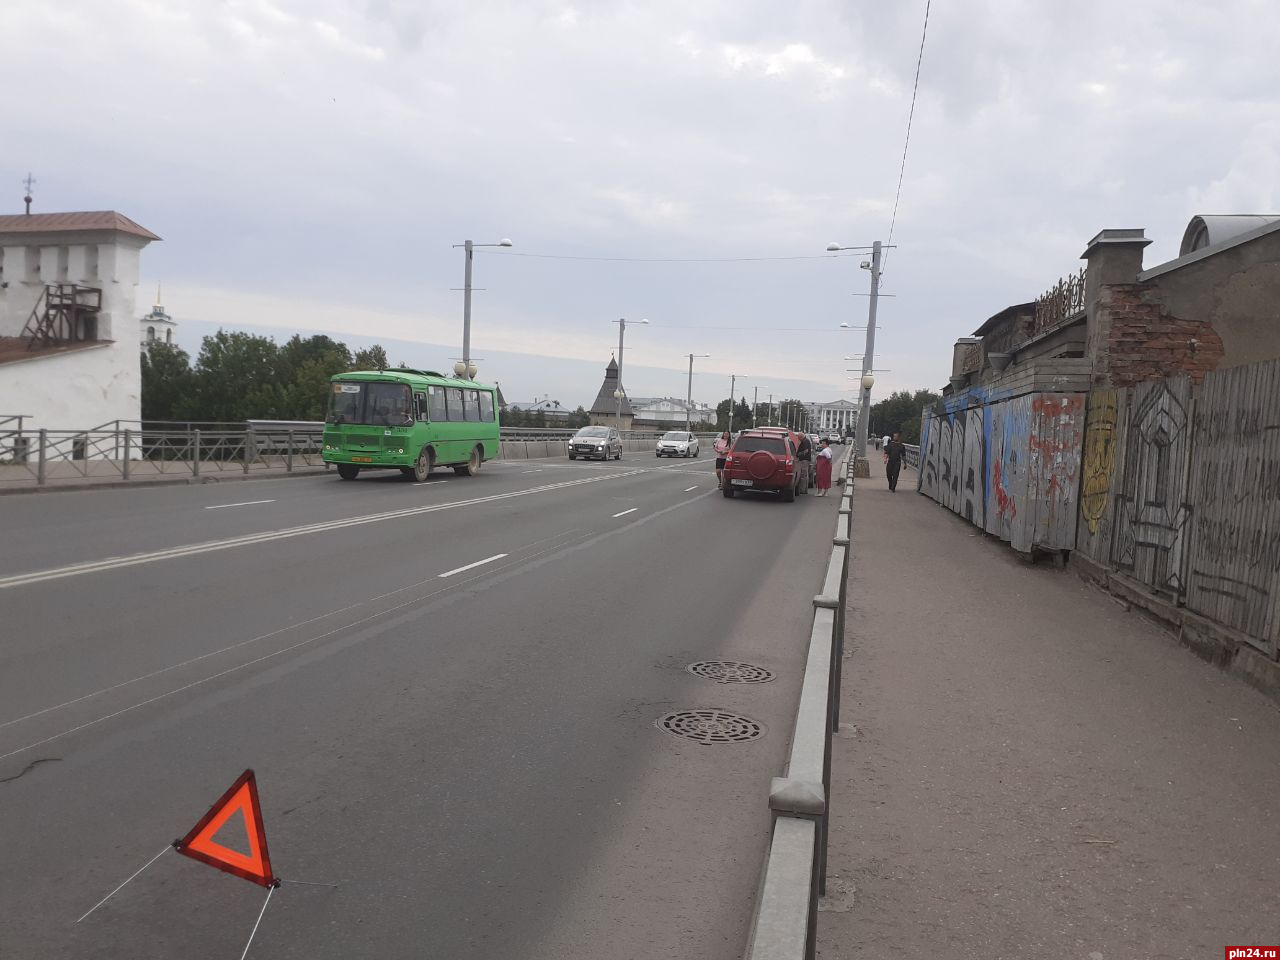 Сломавшийся автомобиль Chery затрудняет движение на Ольгинском мосту в Пскове